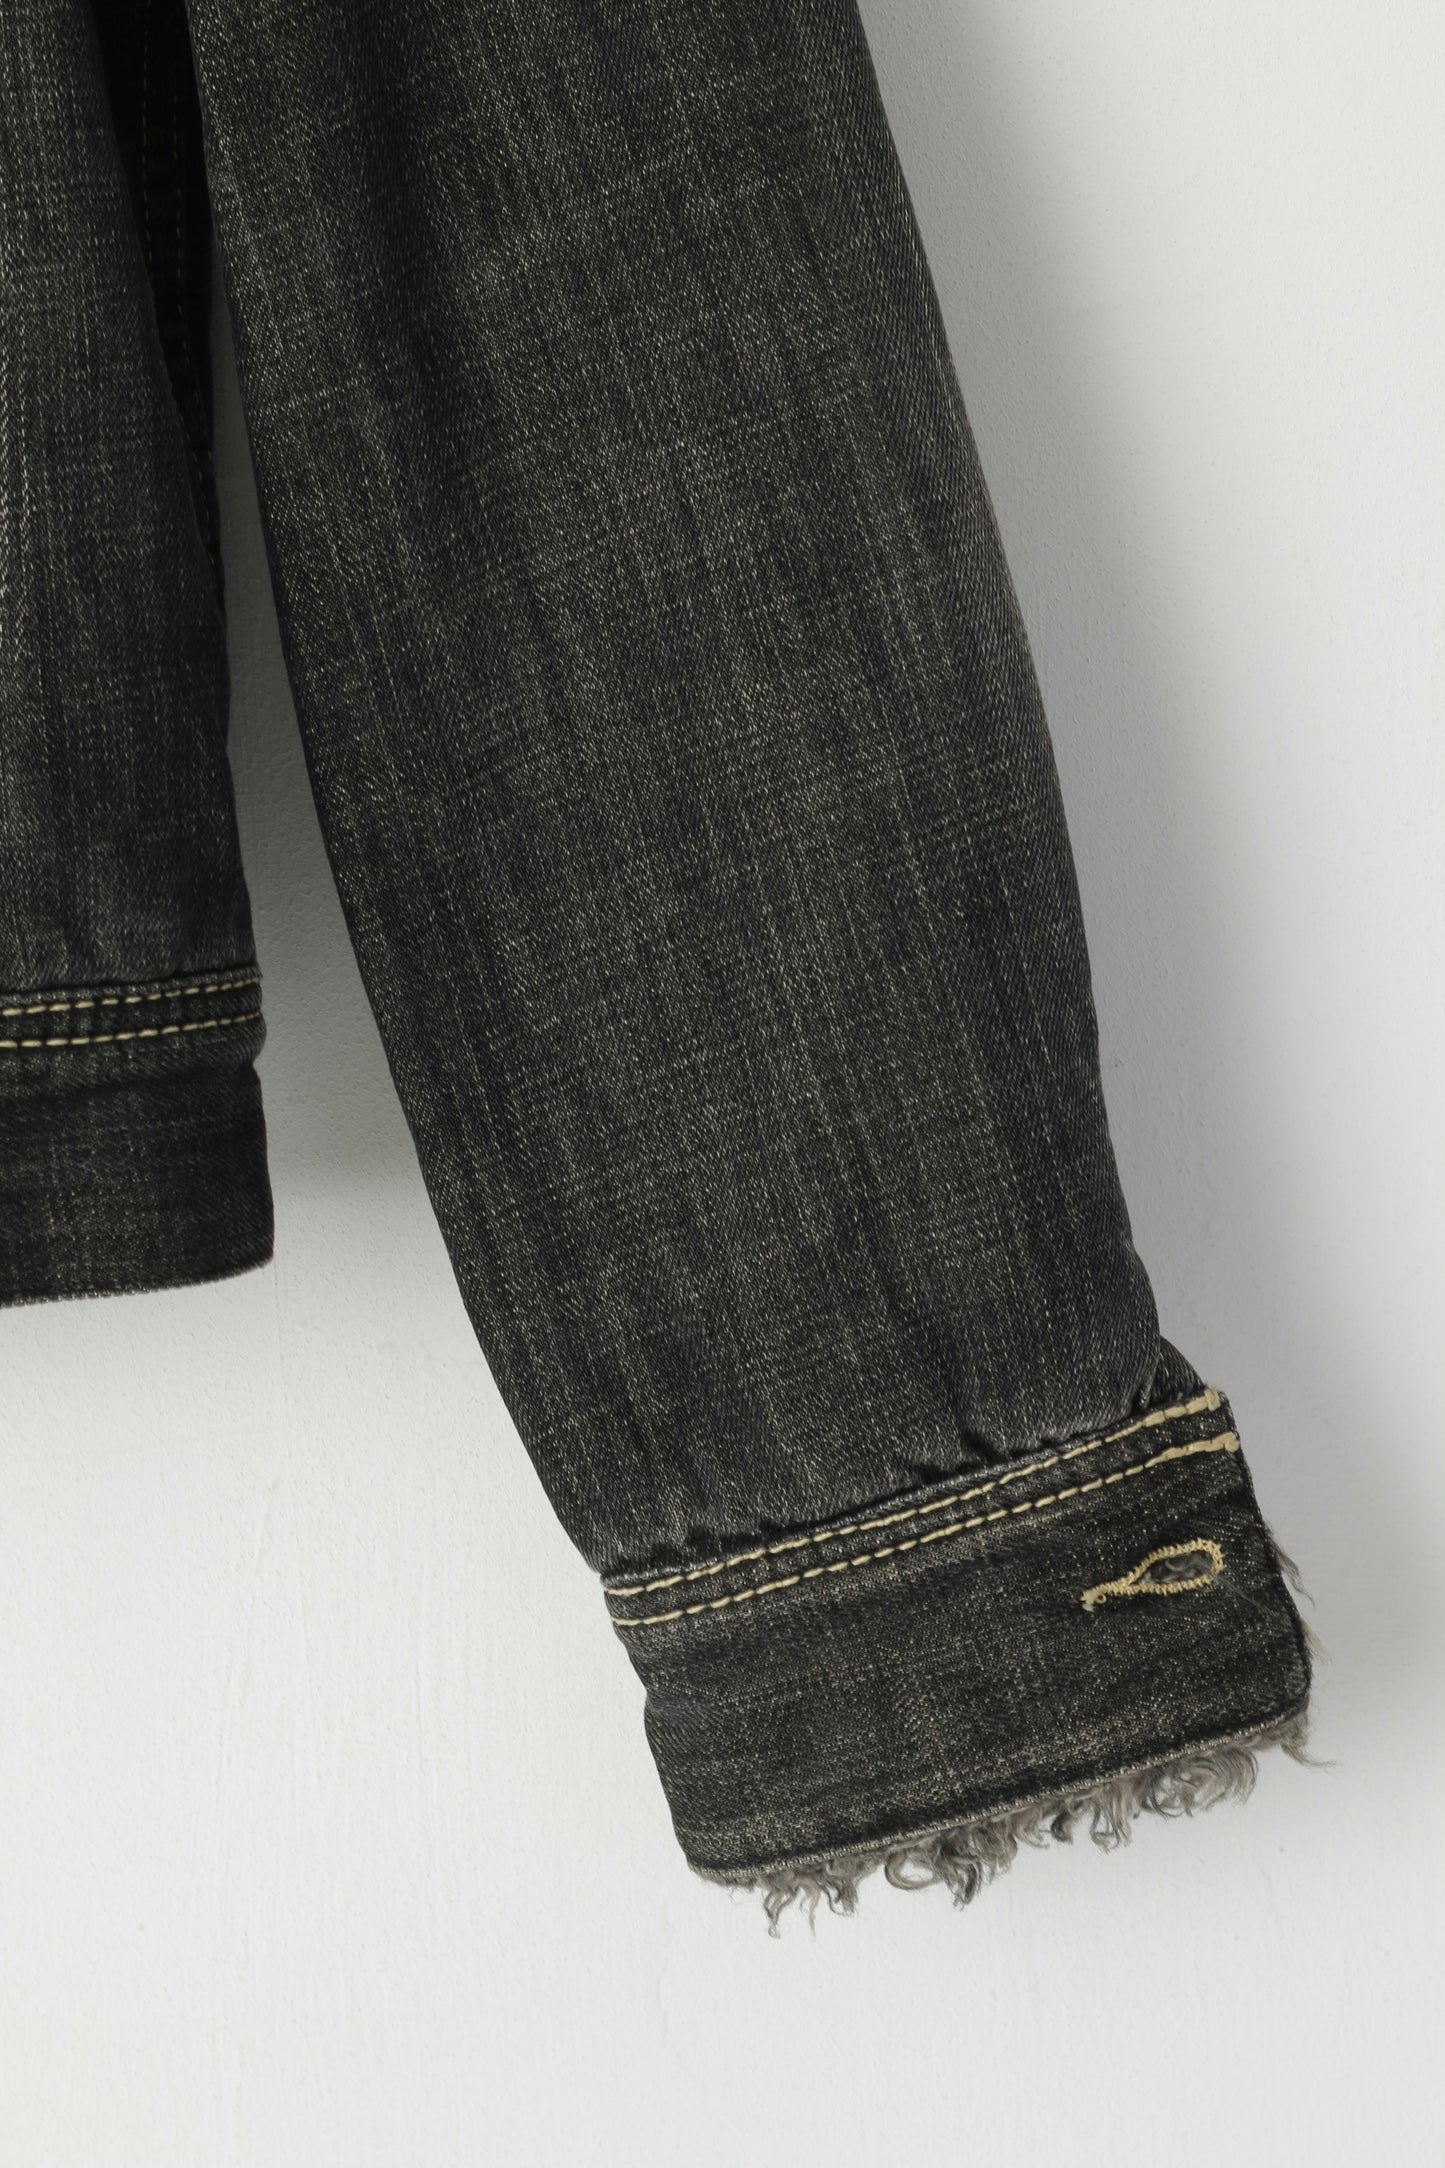 Giacca Lee da donna M. Jeans in denim di cotone grigio. Top corto da camionista foderato in pelliccia